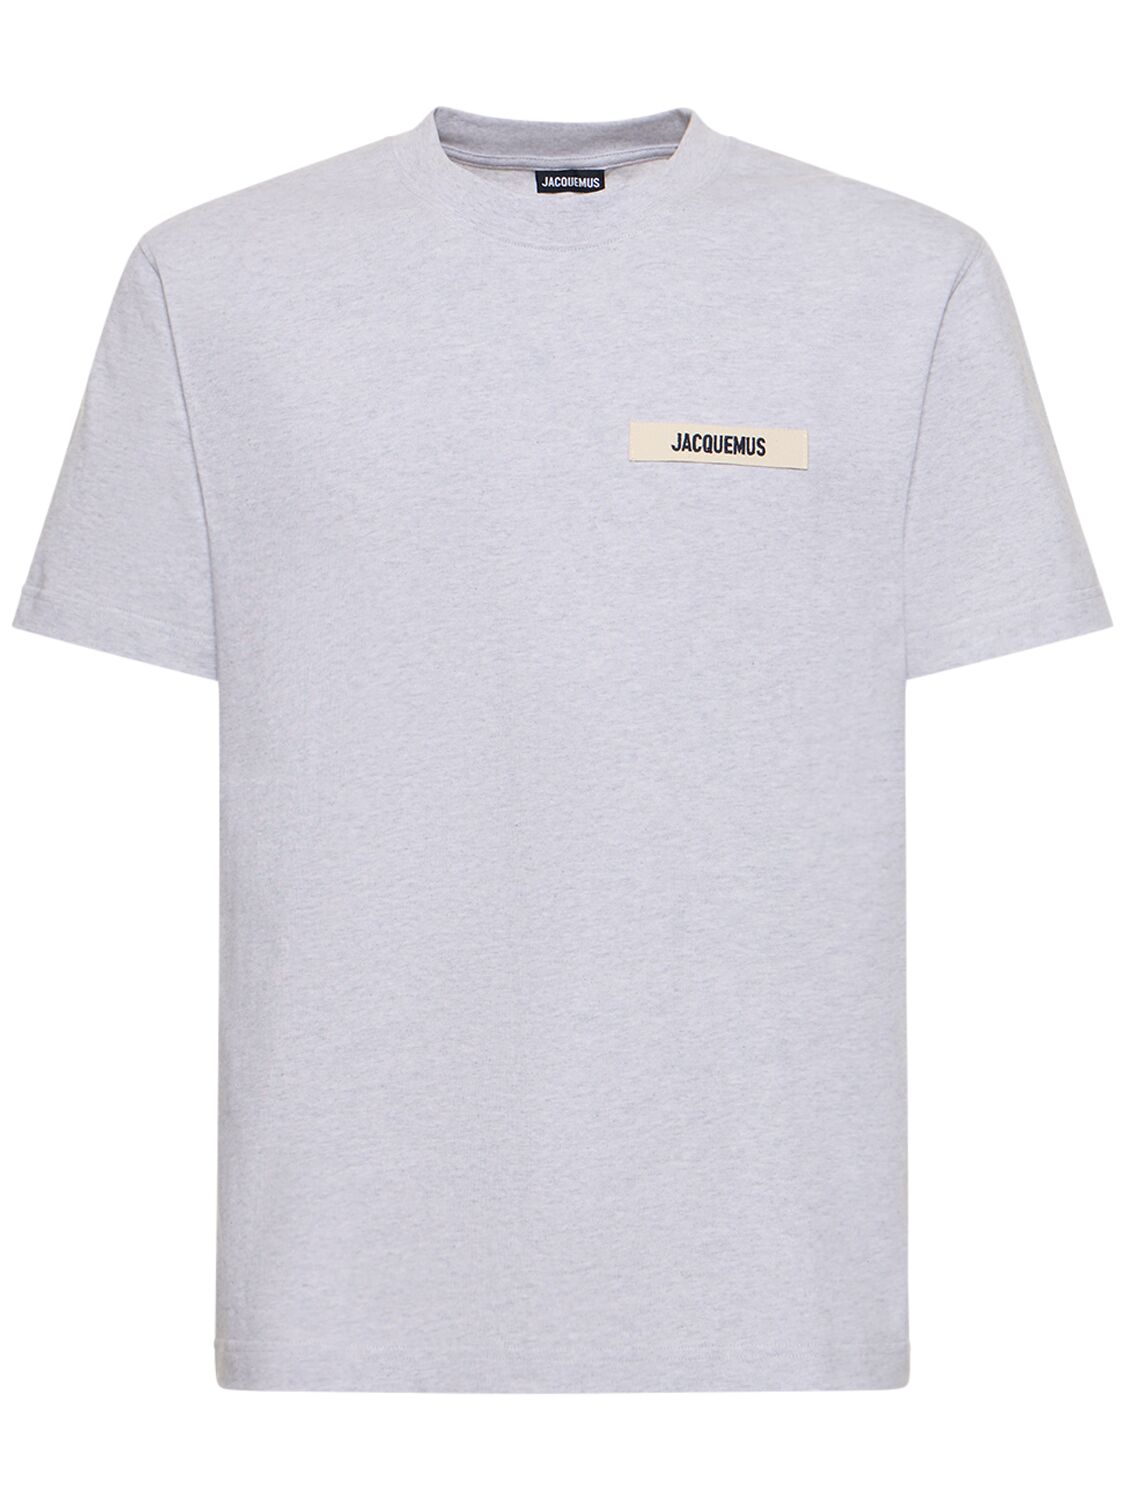 Jacquemus Le Tshirt Gros Grain Cotton T-shirt In Grey